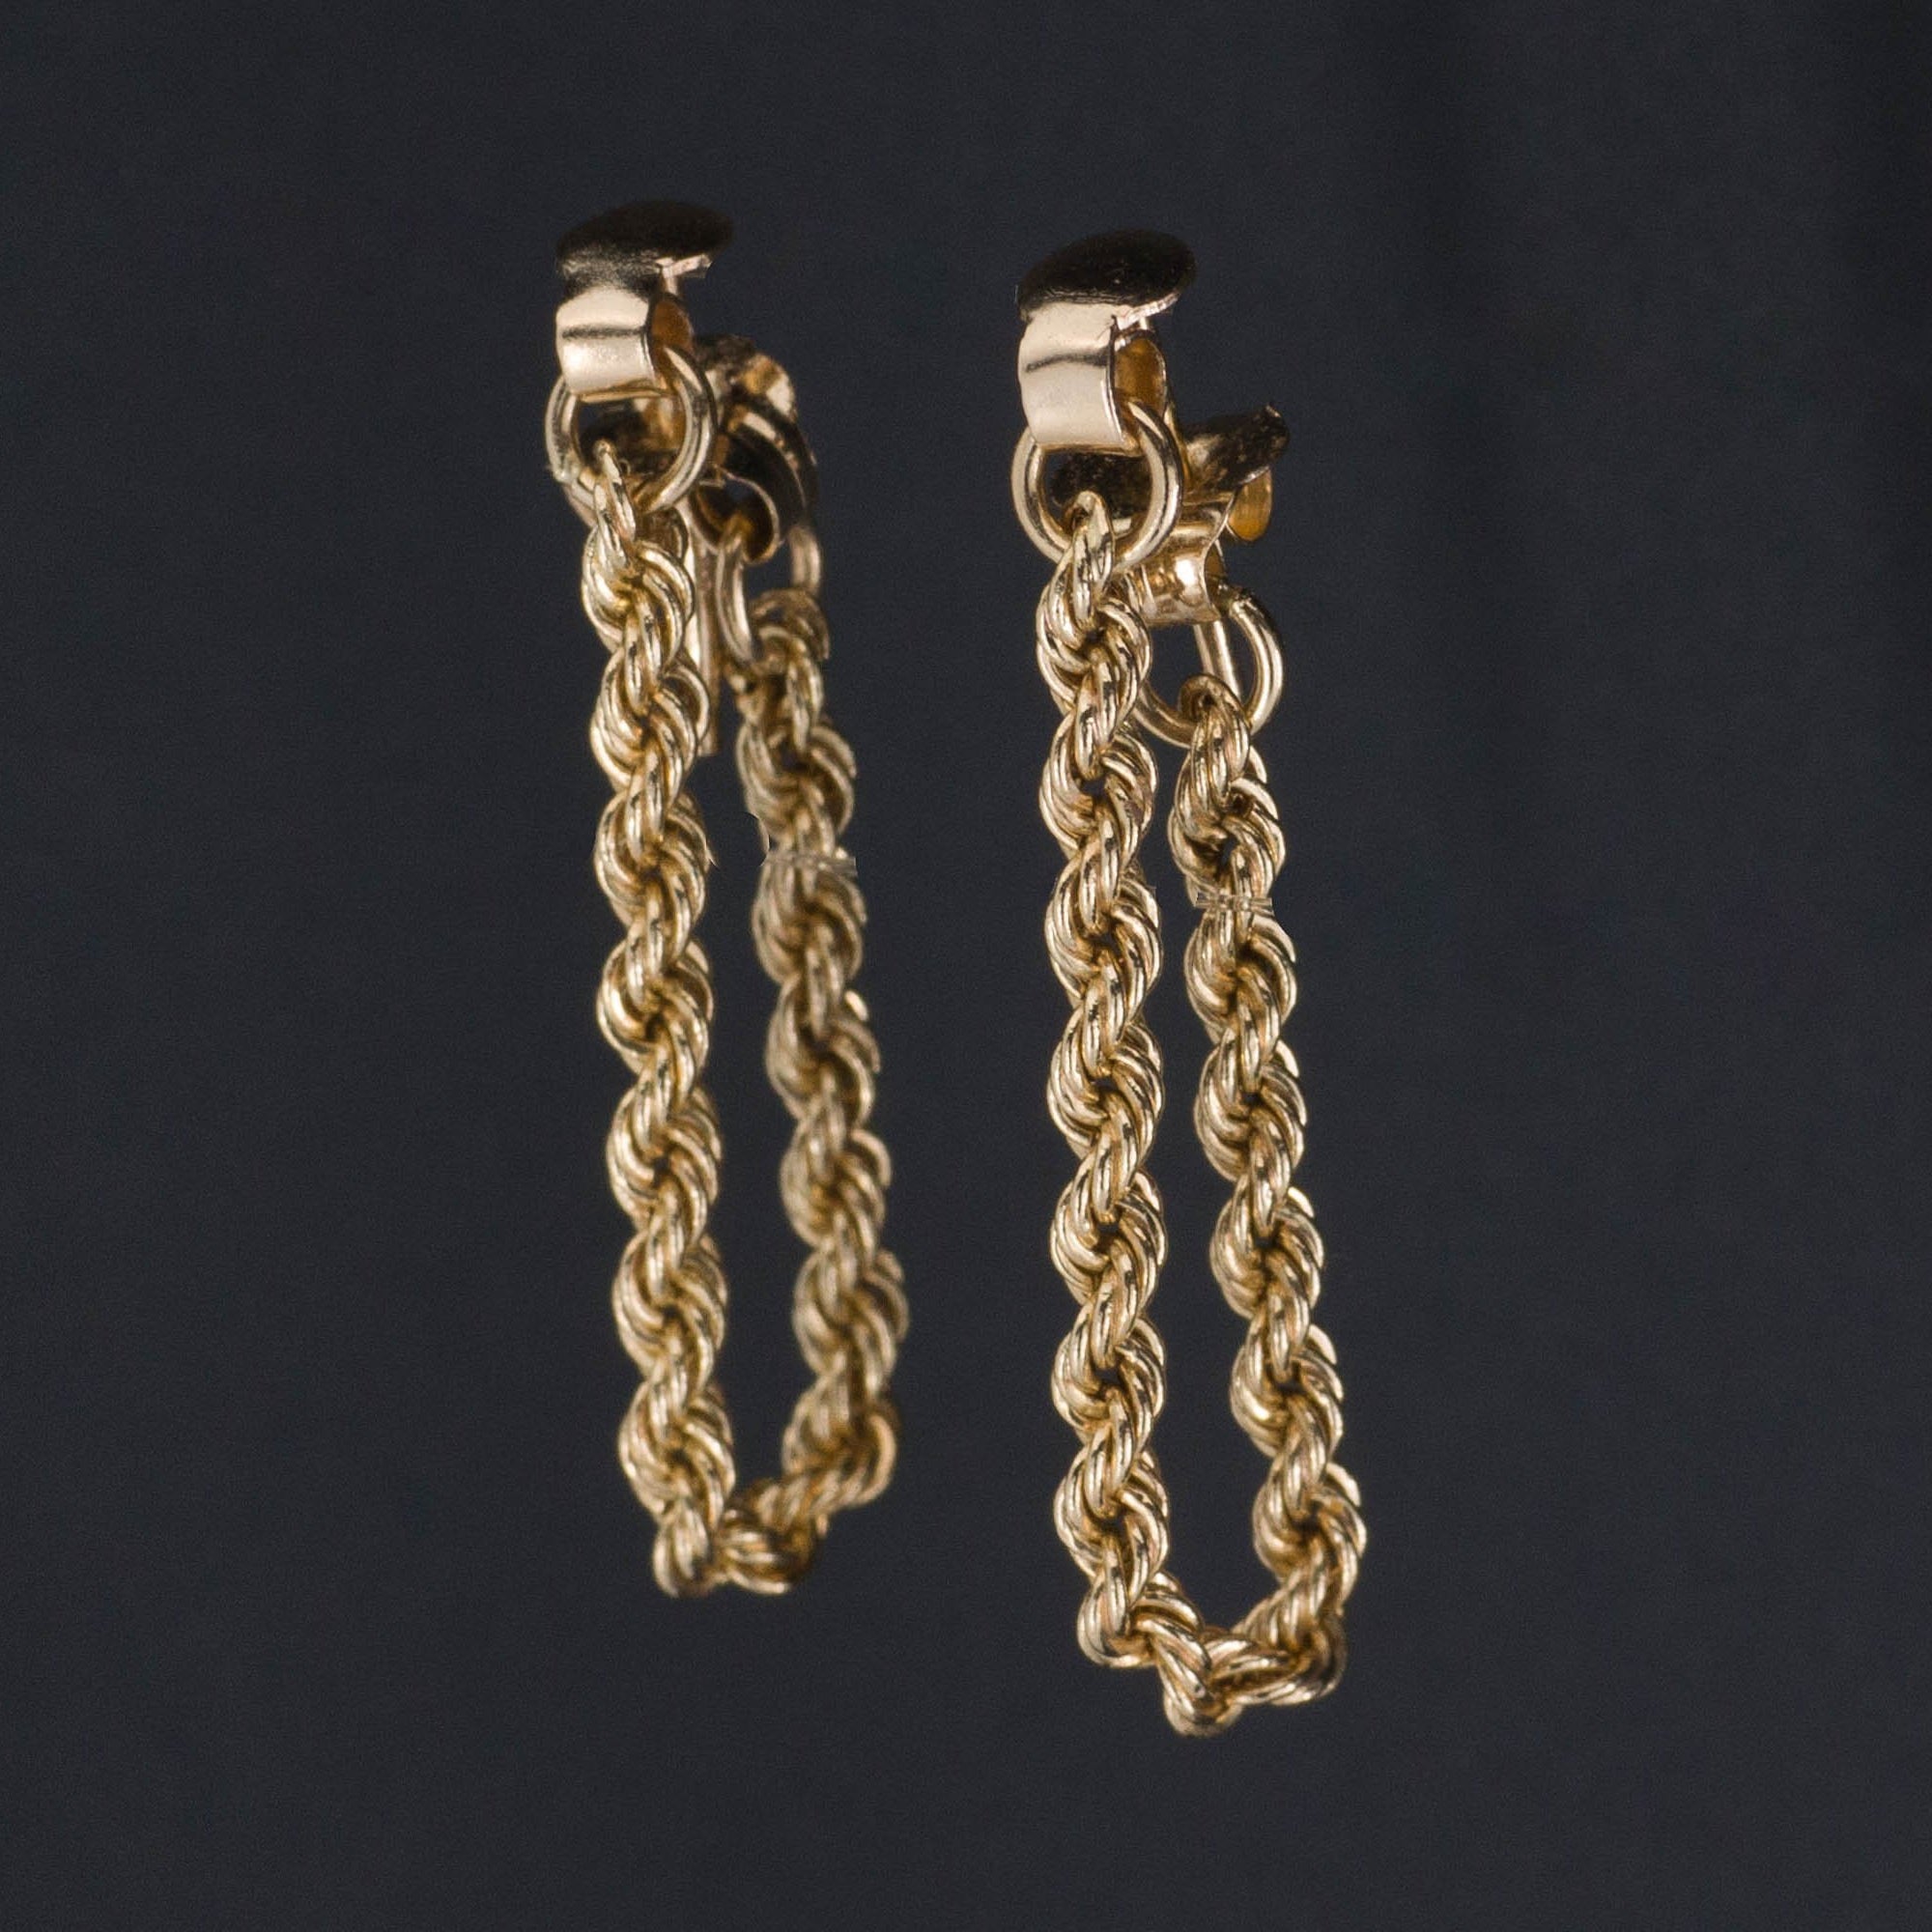 Vintage Gold Flexible Hoop Earrings | 14k Gold Hoop Earrings | 14k Gold Earrings | Medium Gold Earrings